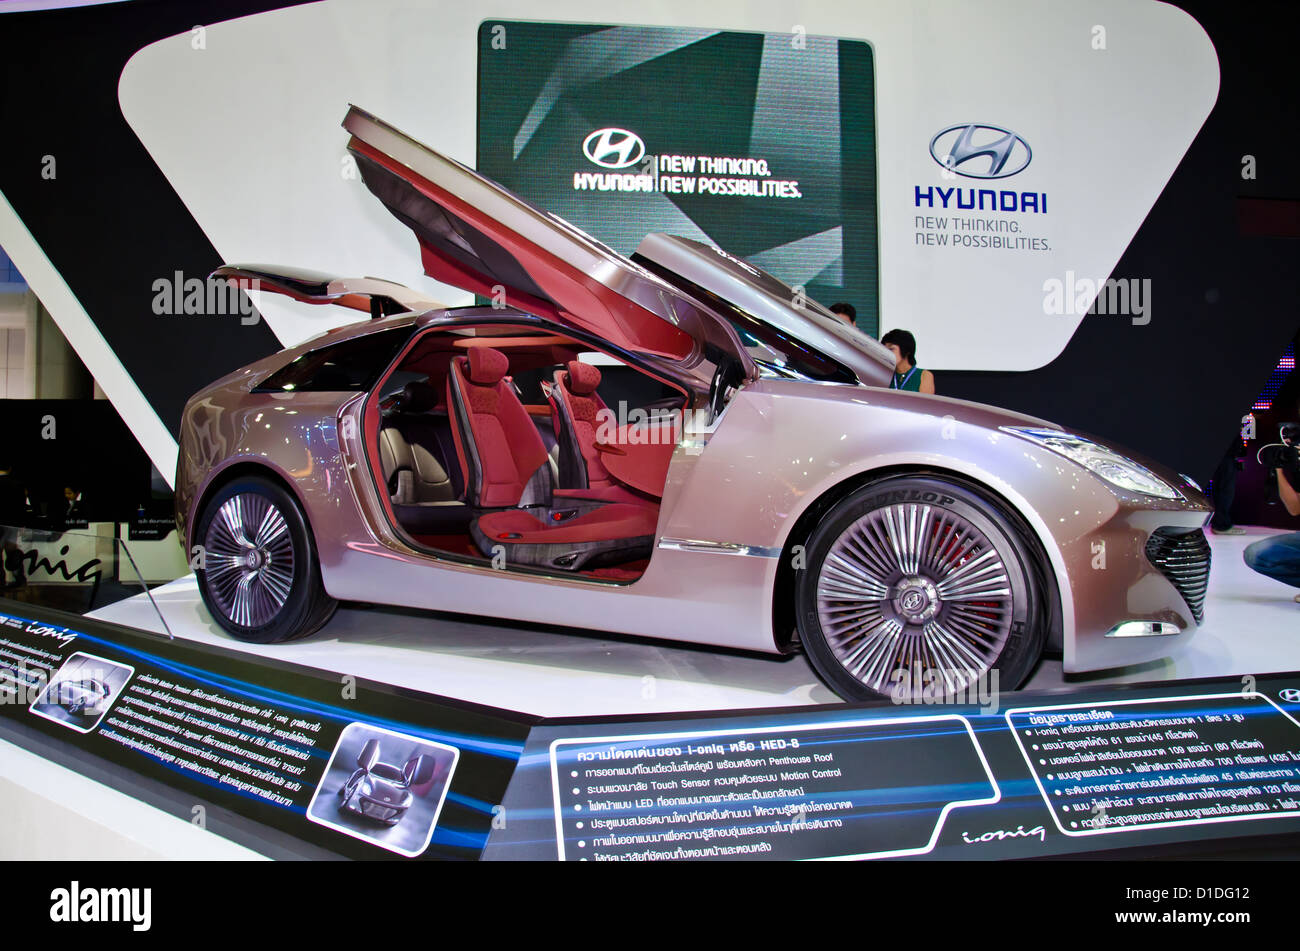 The Hyundai i.oniq car on display at The 29th Thailand International Motor Expo on November 28, 2012 i Stock Photo